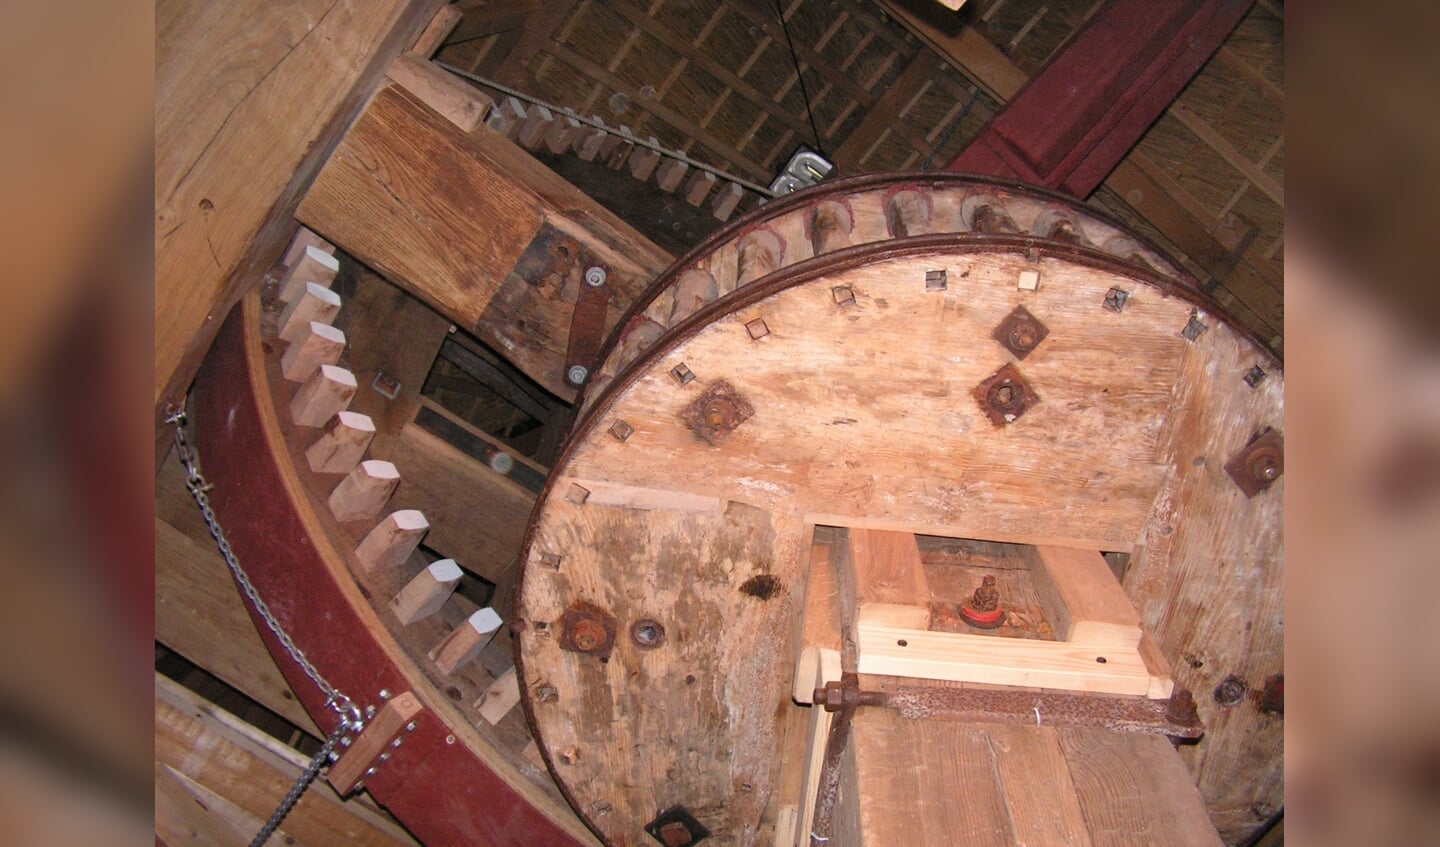 De overbrenging van het bovenwiel dat op de bovenas met wieken zit naar het koningsspil, dat is de grote verticale as waar lager in de molen het maalwerk aan is gekoppeld. 